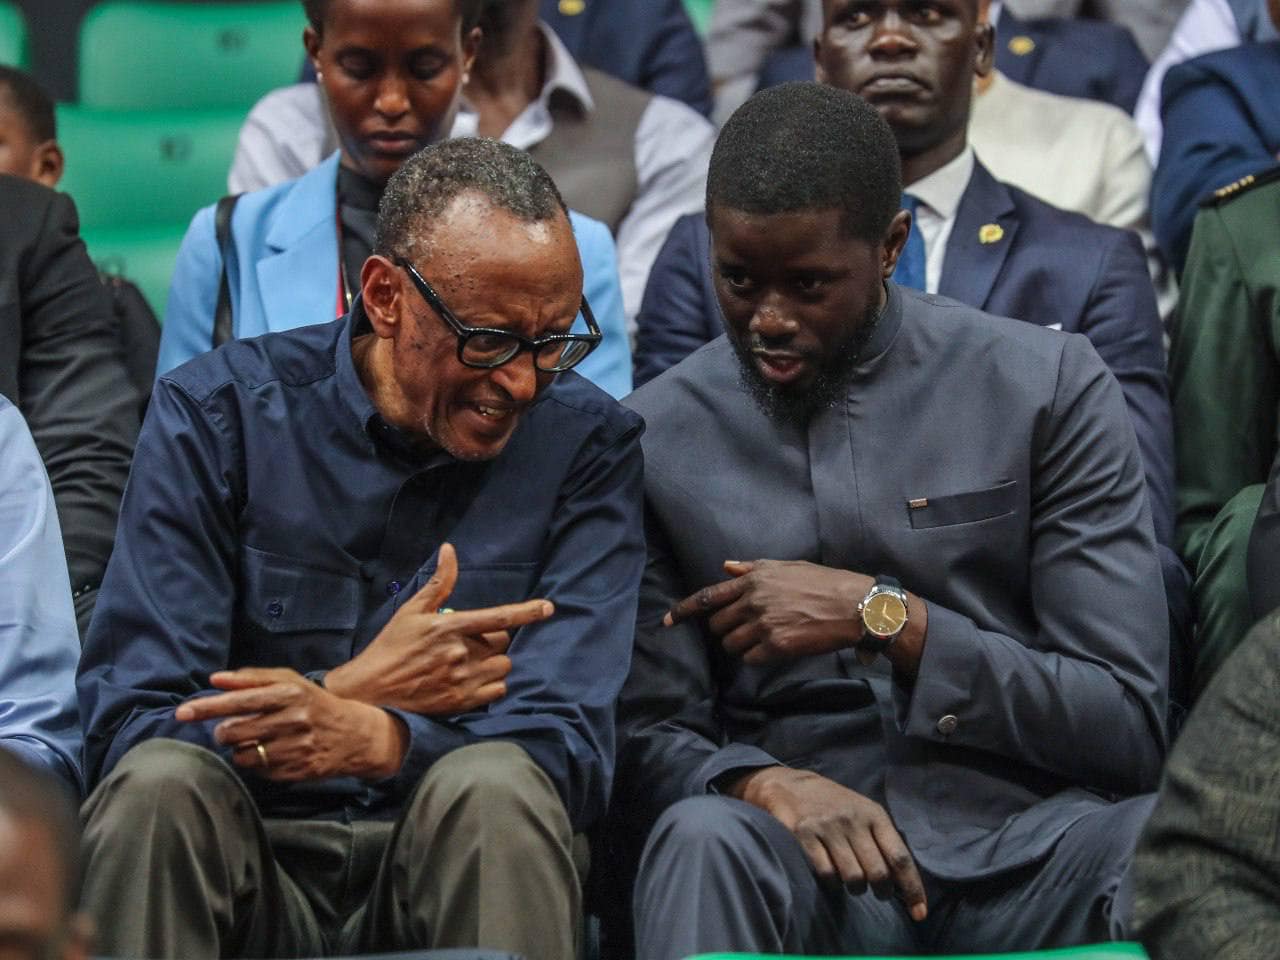 Une victoire pour le sport et la diplomatie : Les présidents Faye et Kagame à la BAL4 à Dakar